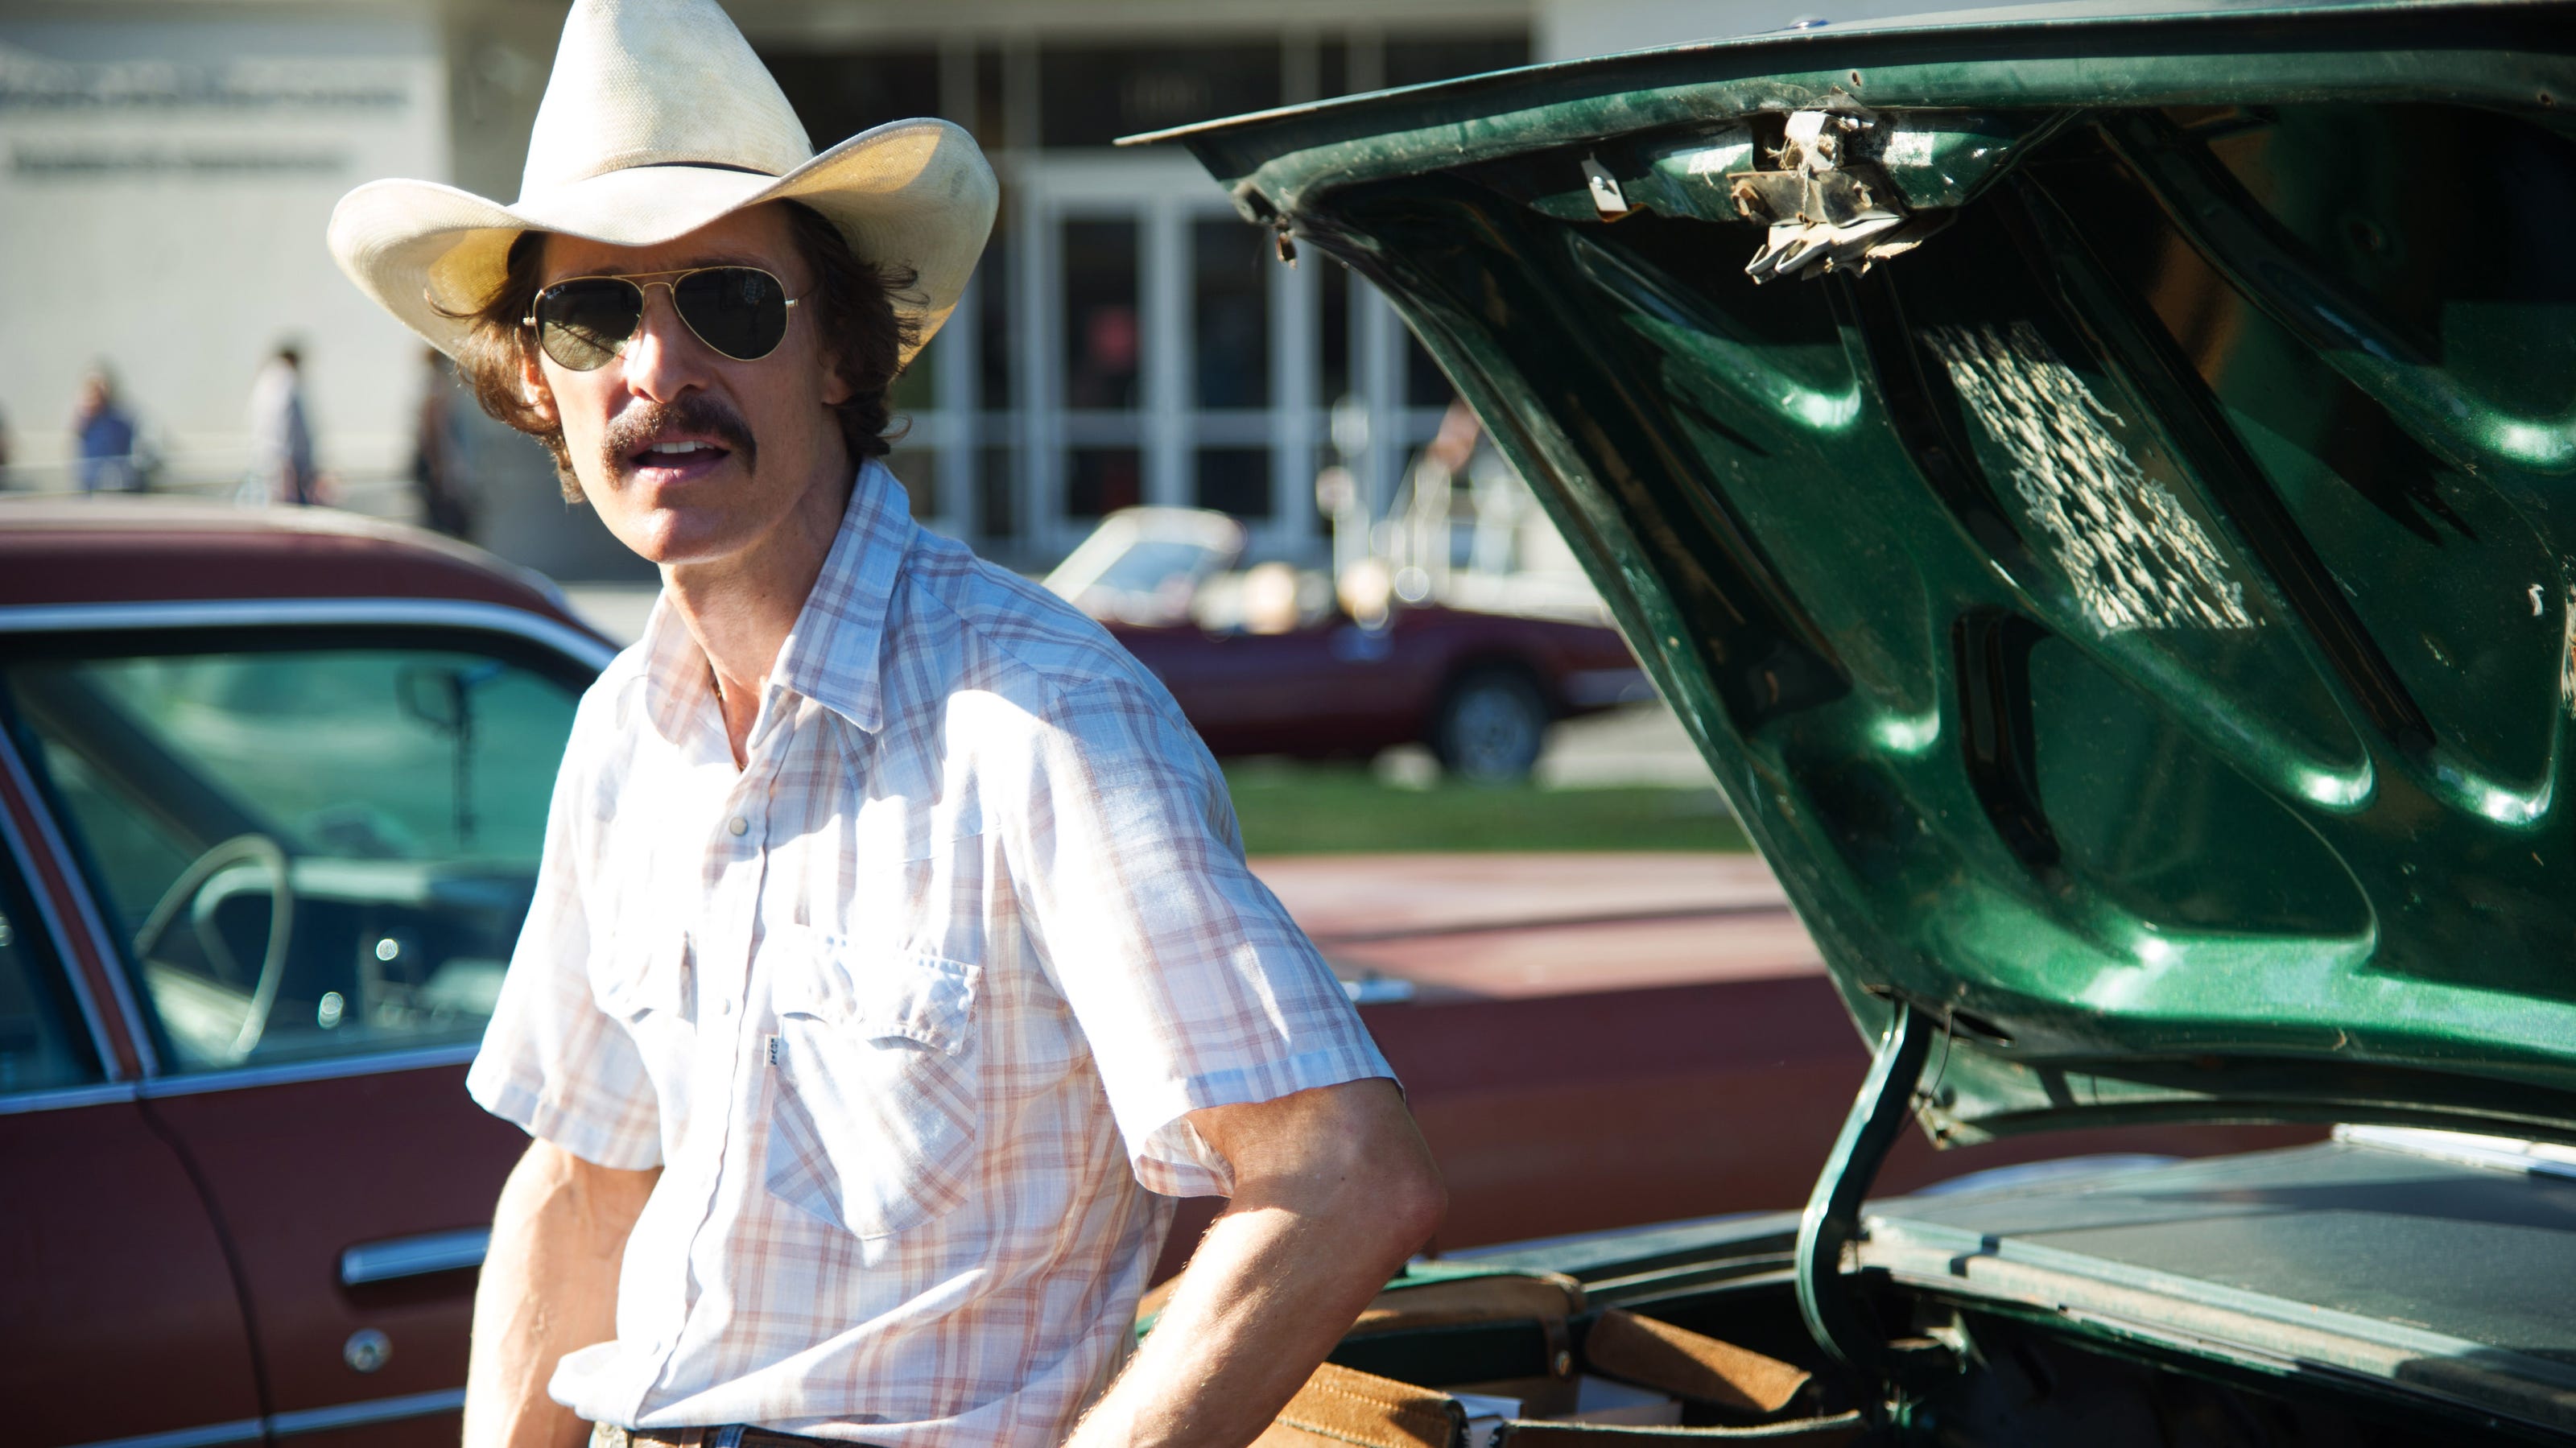 Matthew McConaughey sells role in 'Dallas Buyers Club'